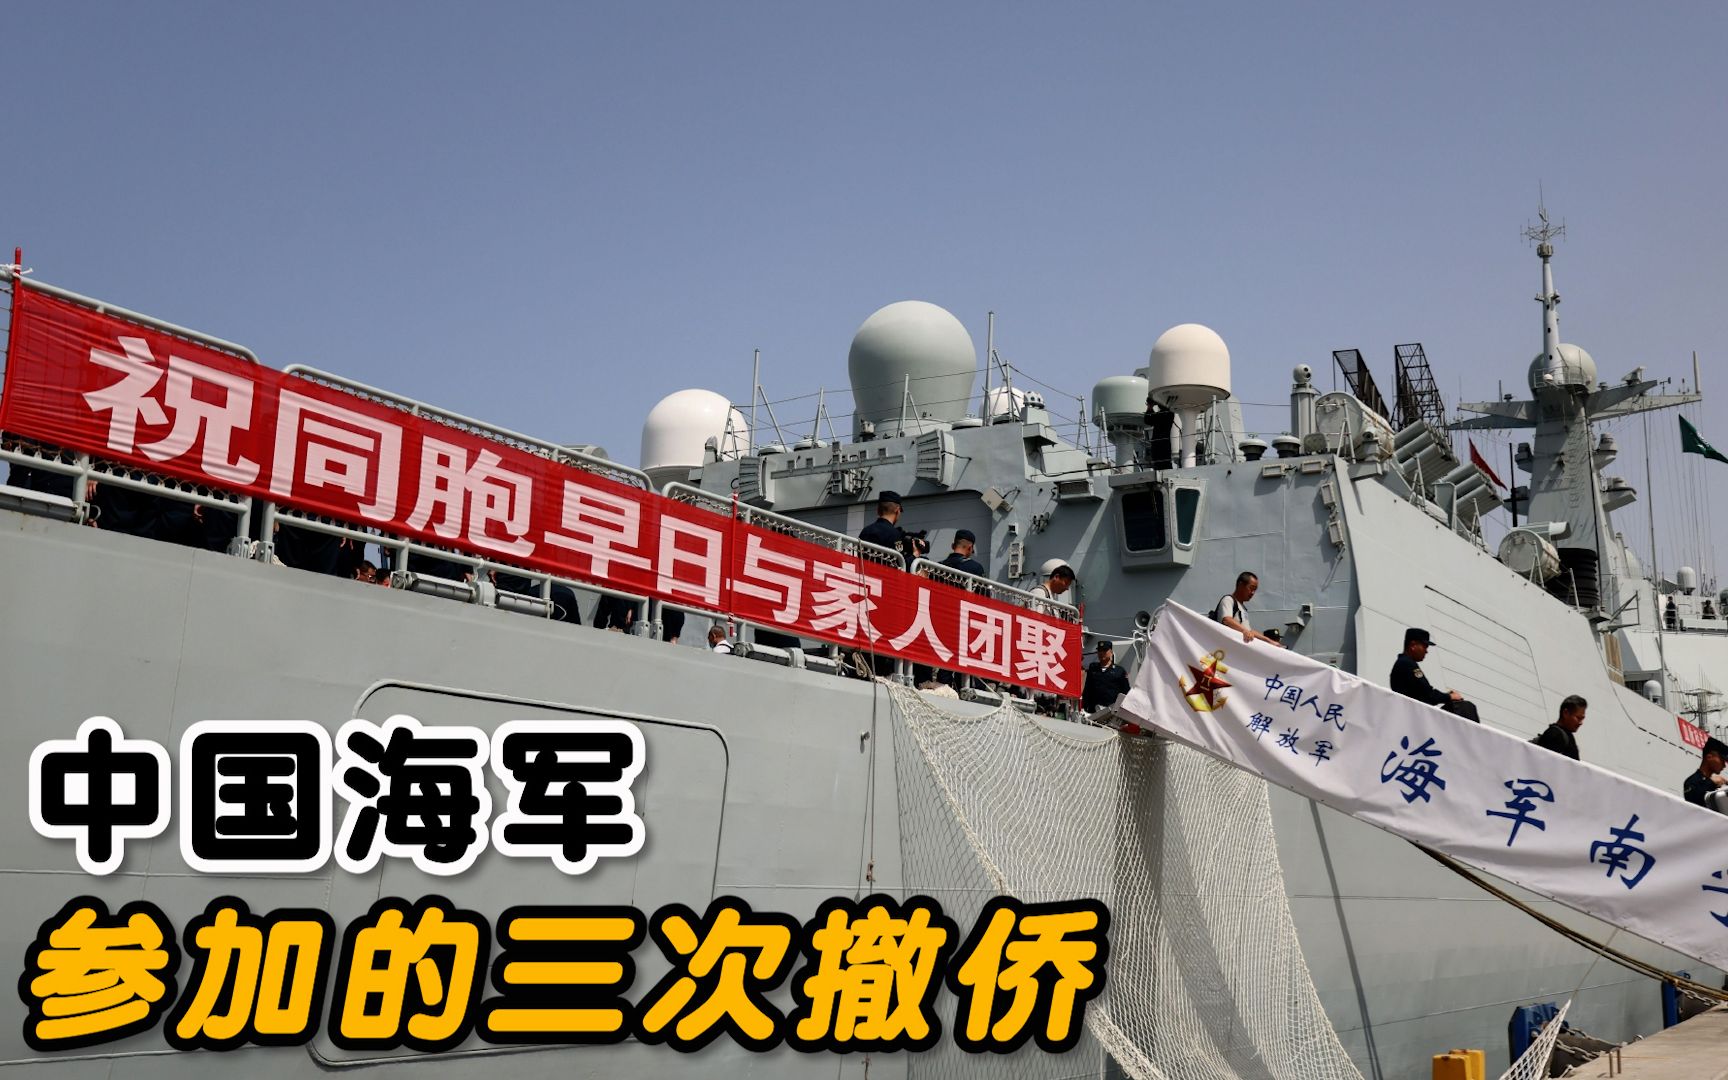 中国海军一共执行过三次撤侨行动:利比亚,也门,苏丹